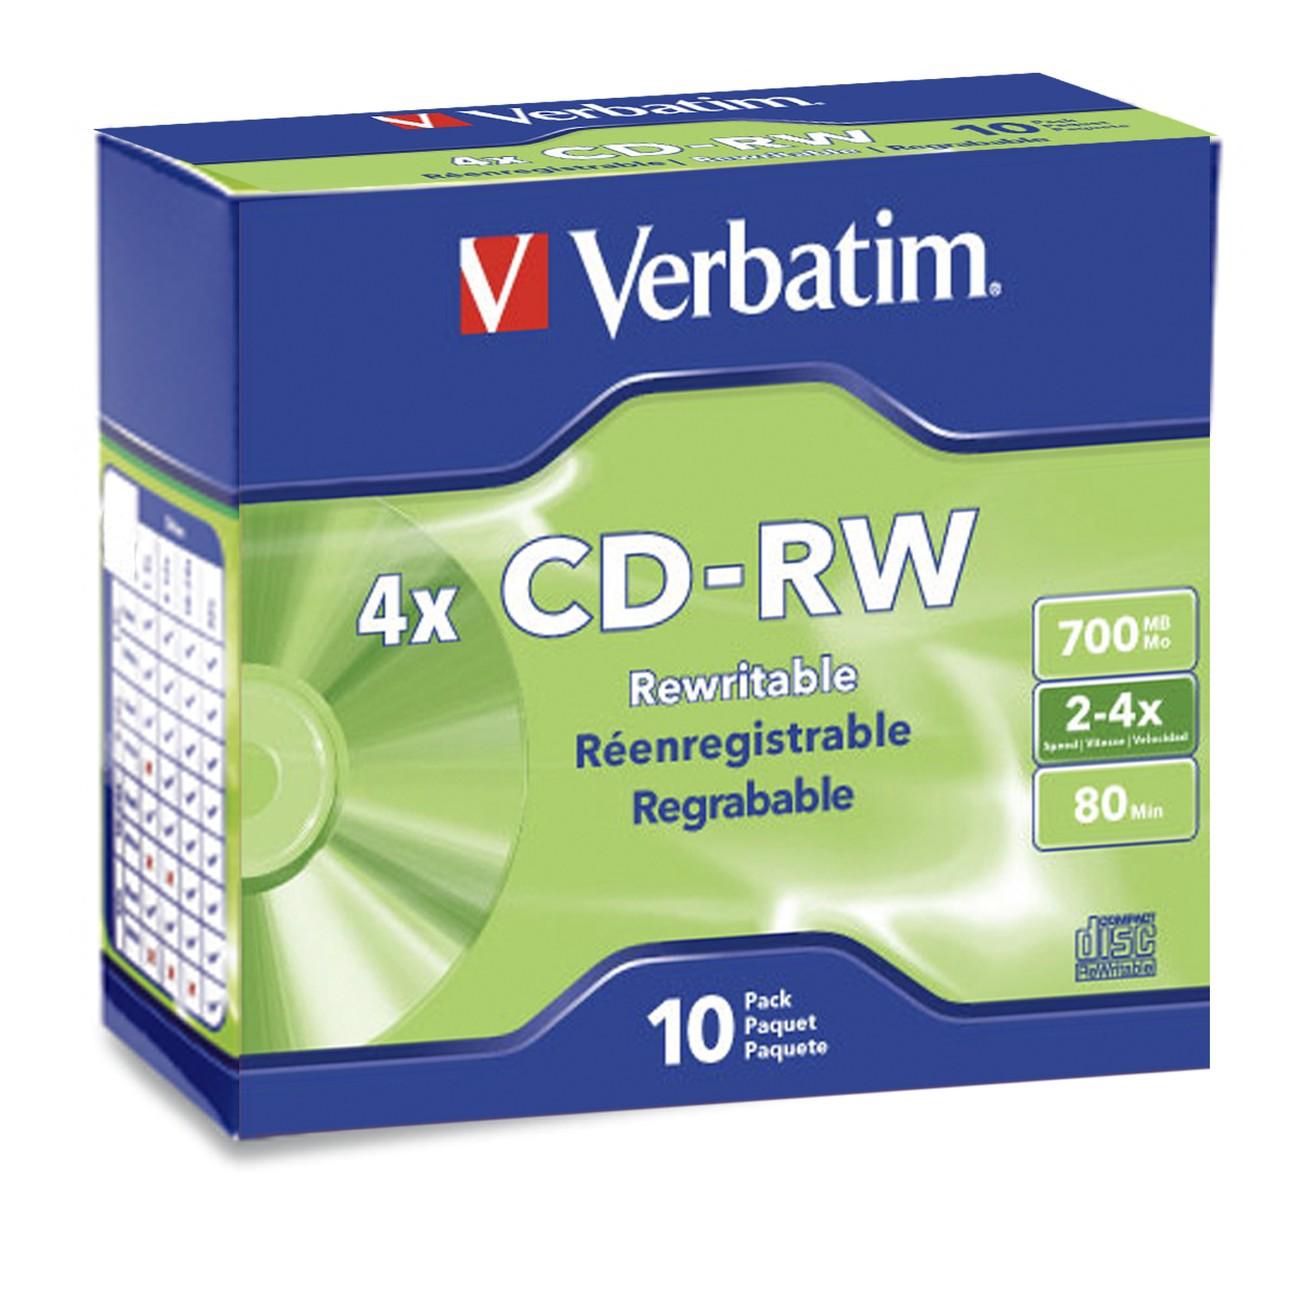 Verbatim cd-rw brand slv 10pk 700mb/4x slim case - image 2 of 2